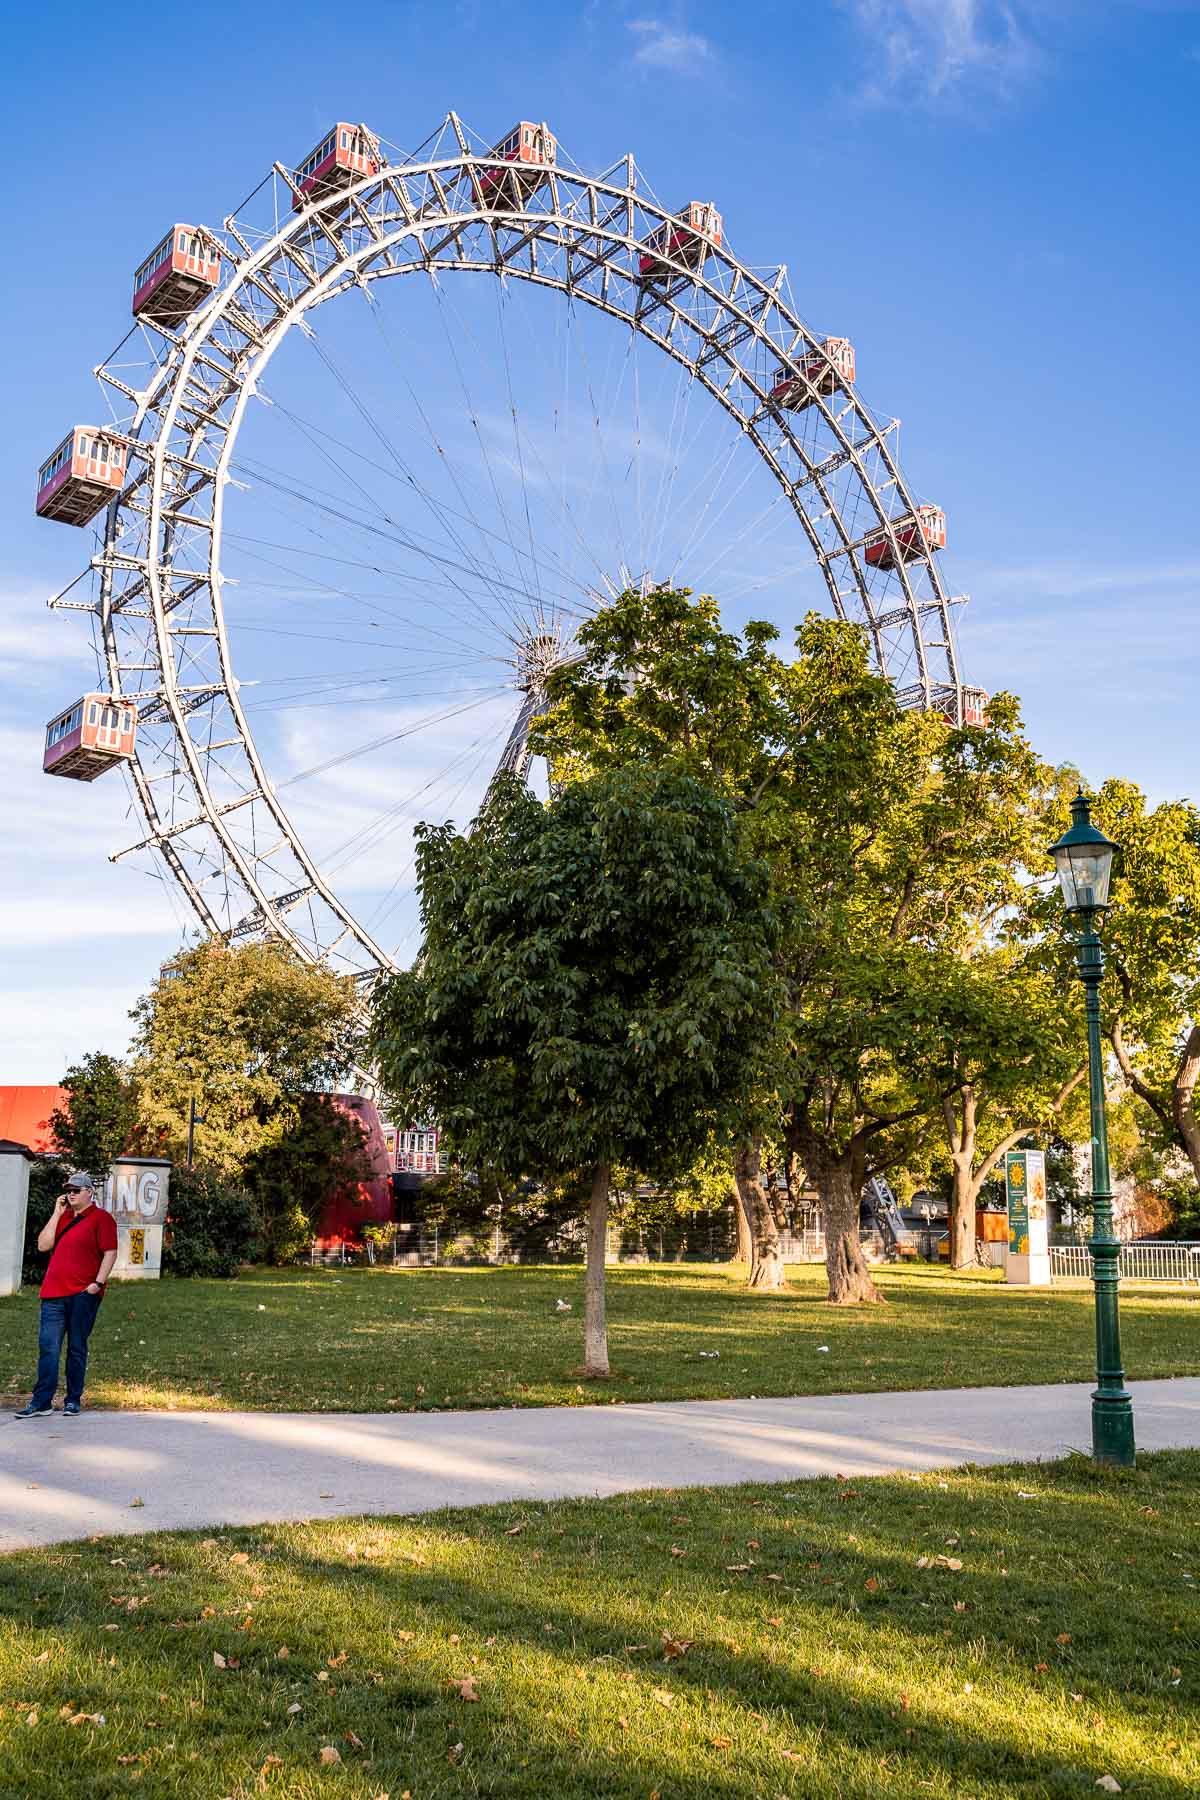 Ferris wheel at the Vergnügungspark Prater in Vienna